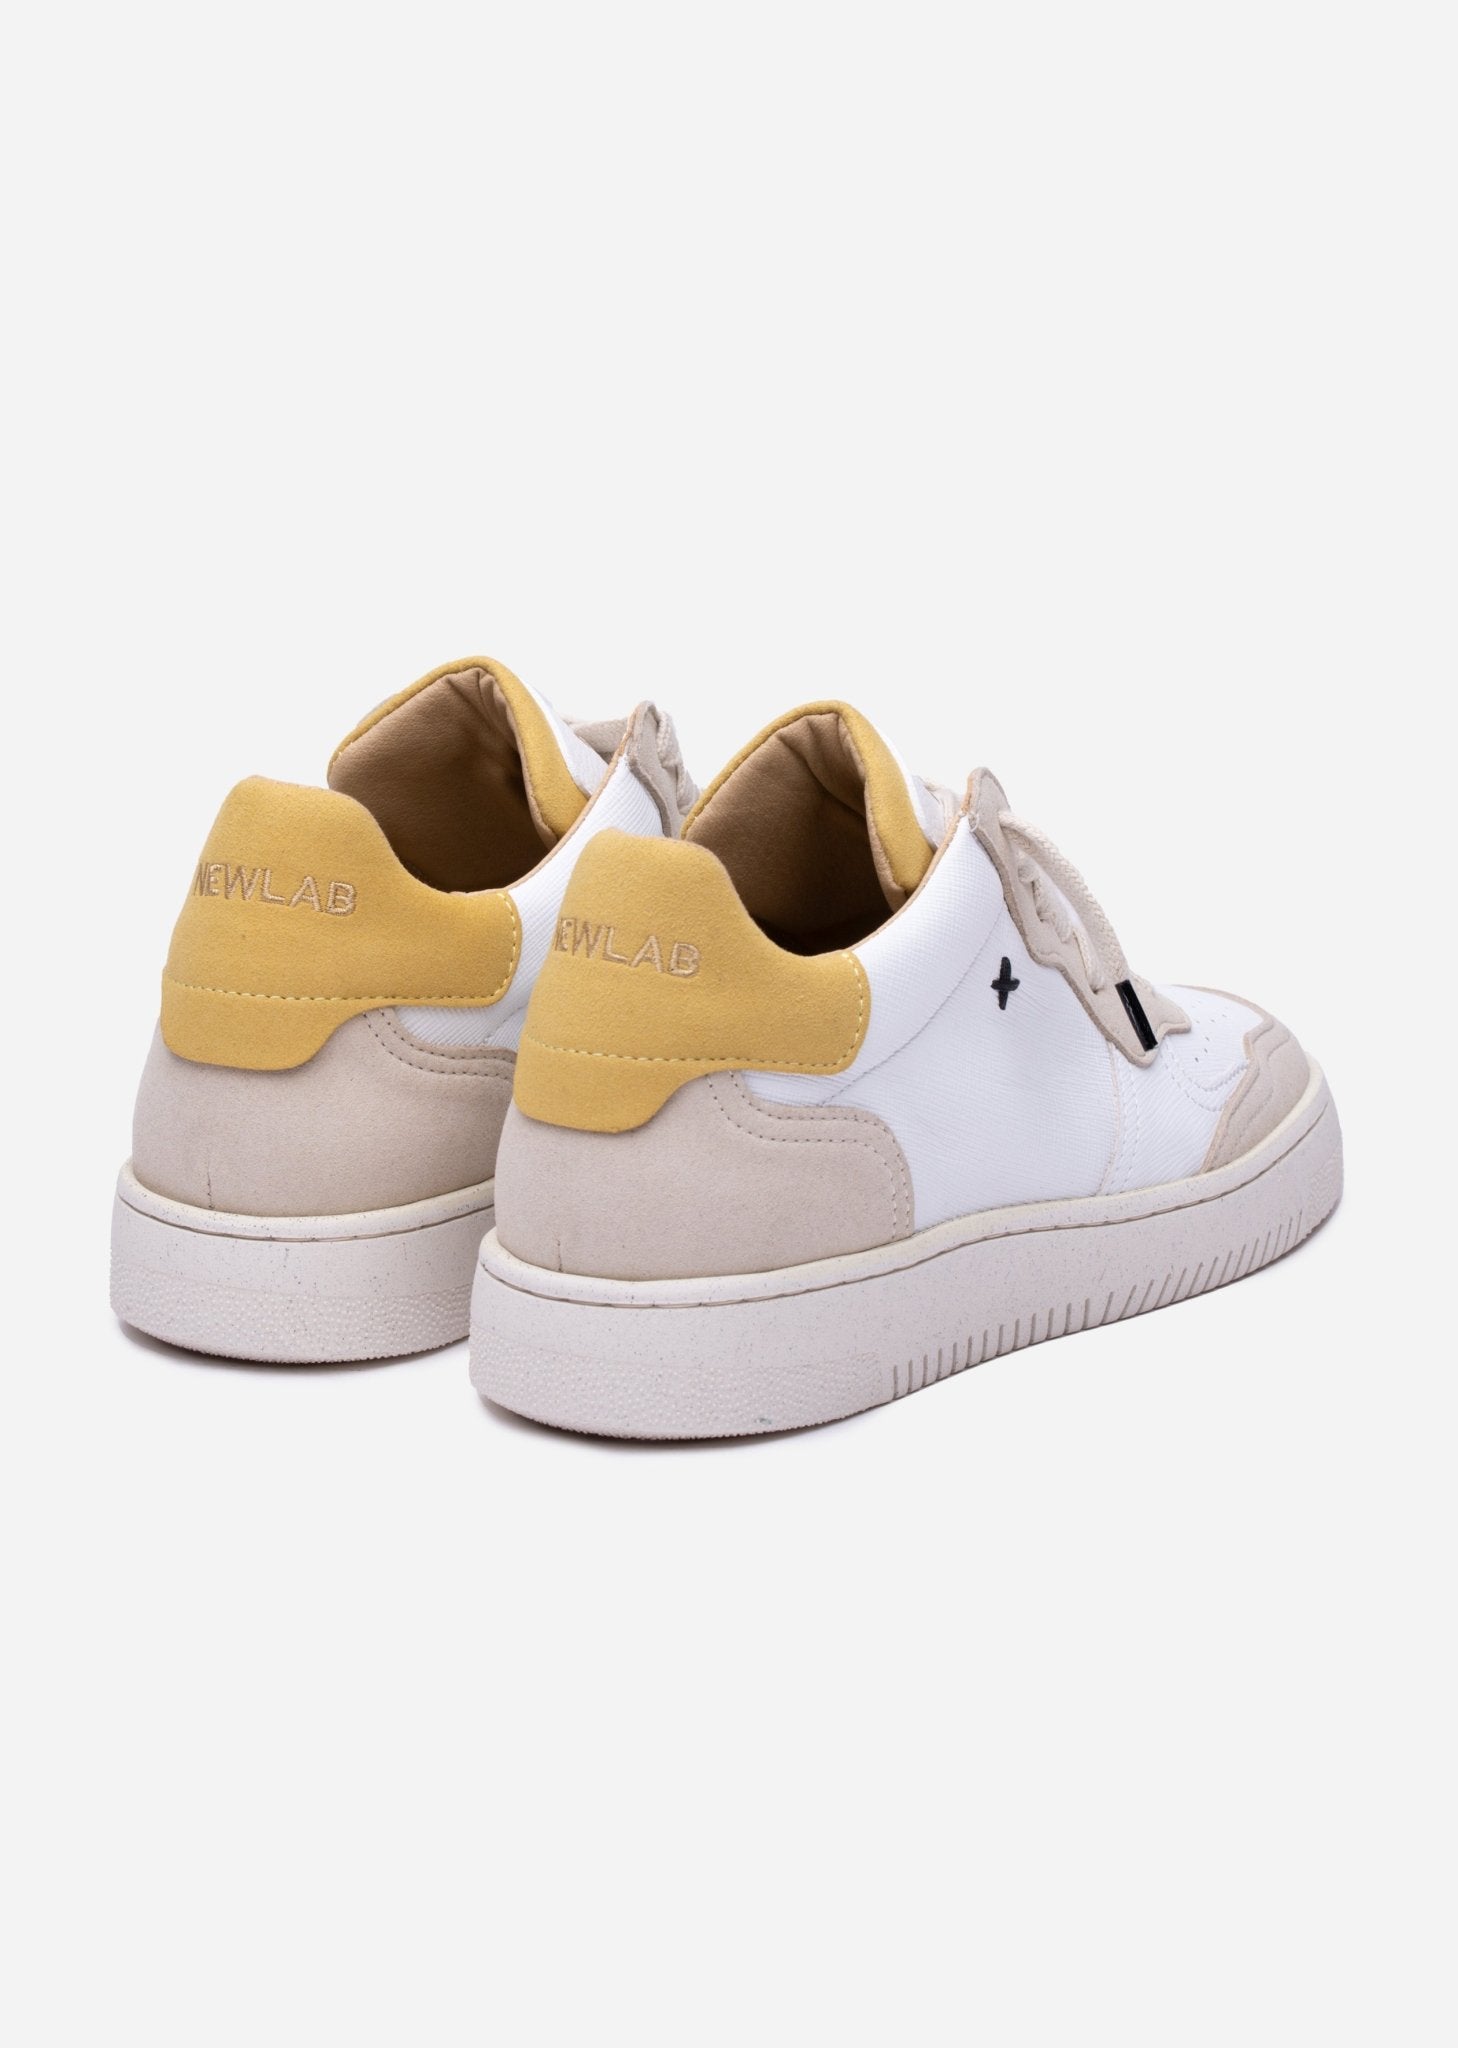 NL11 White/Yellow - NEWLAB - Chaussures - NEWLAB